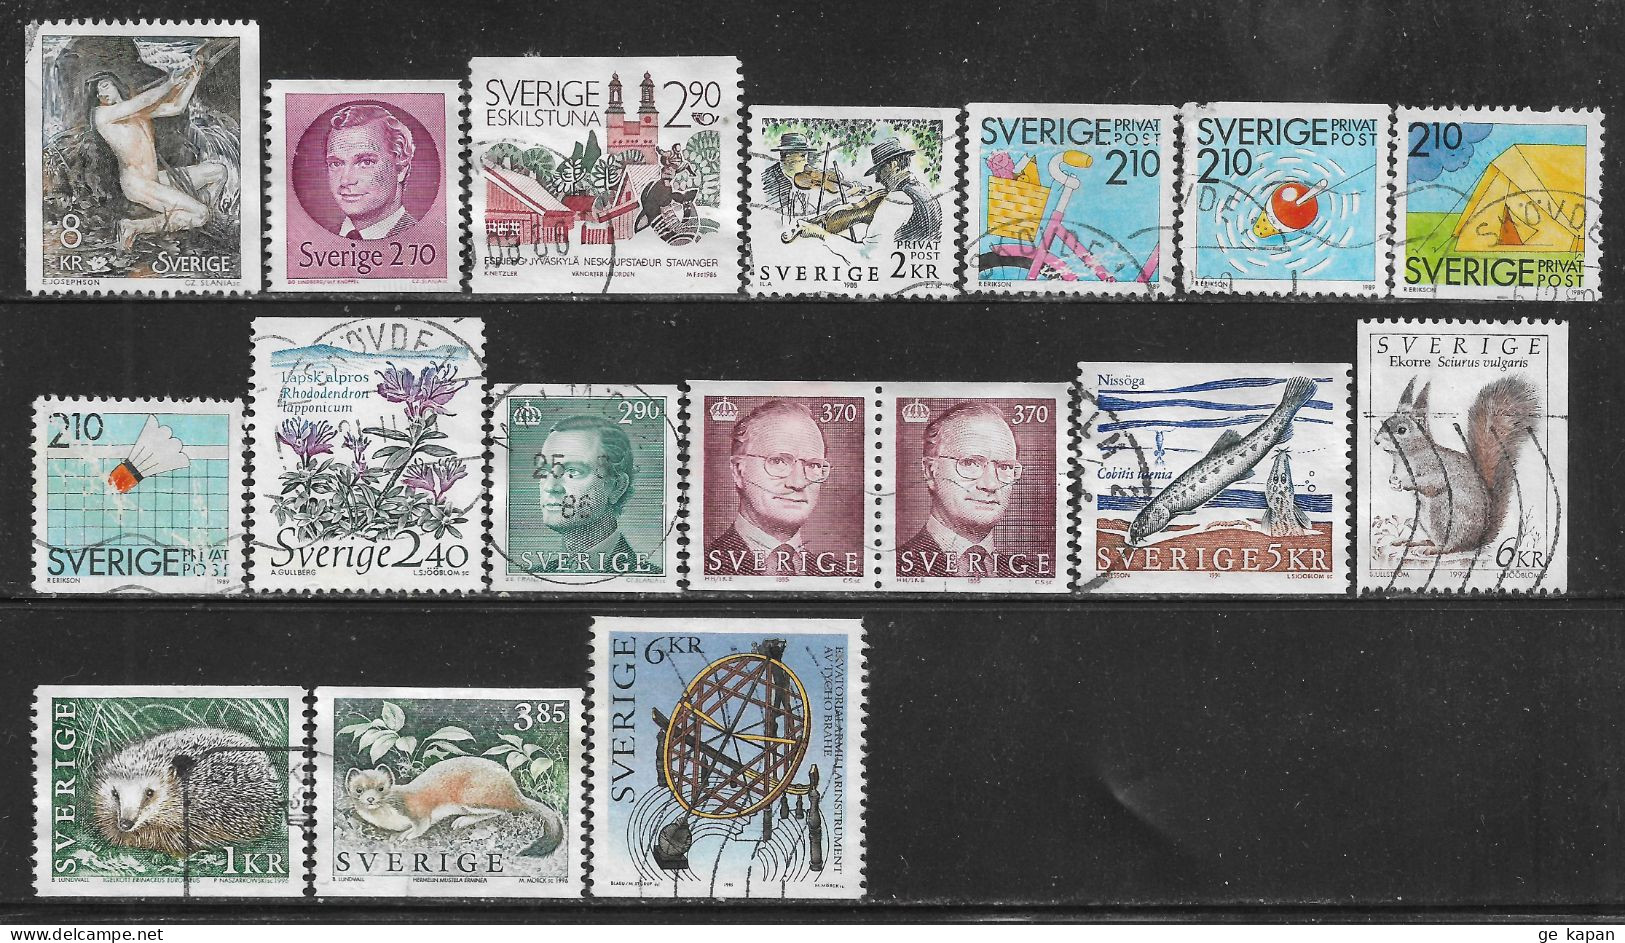 1980-96 SWEDEN 17 Used Stamps (Sc.# 1340,1372,1604,1685,1741,1743,1744,1746,1762,1785,1787,1869,1933,1926,1931) CV $7.95 - Gebraucht